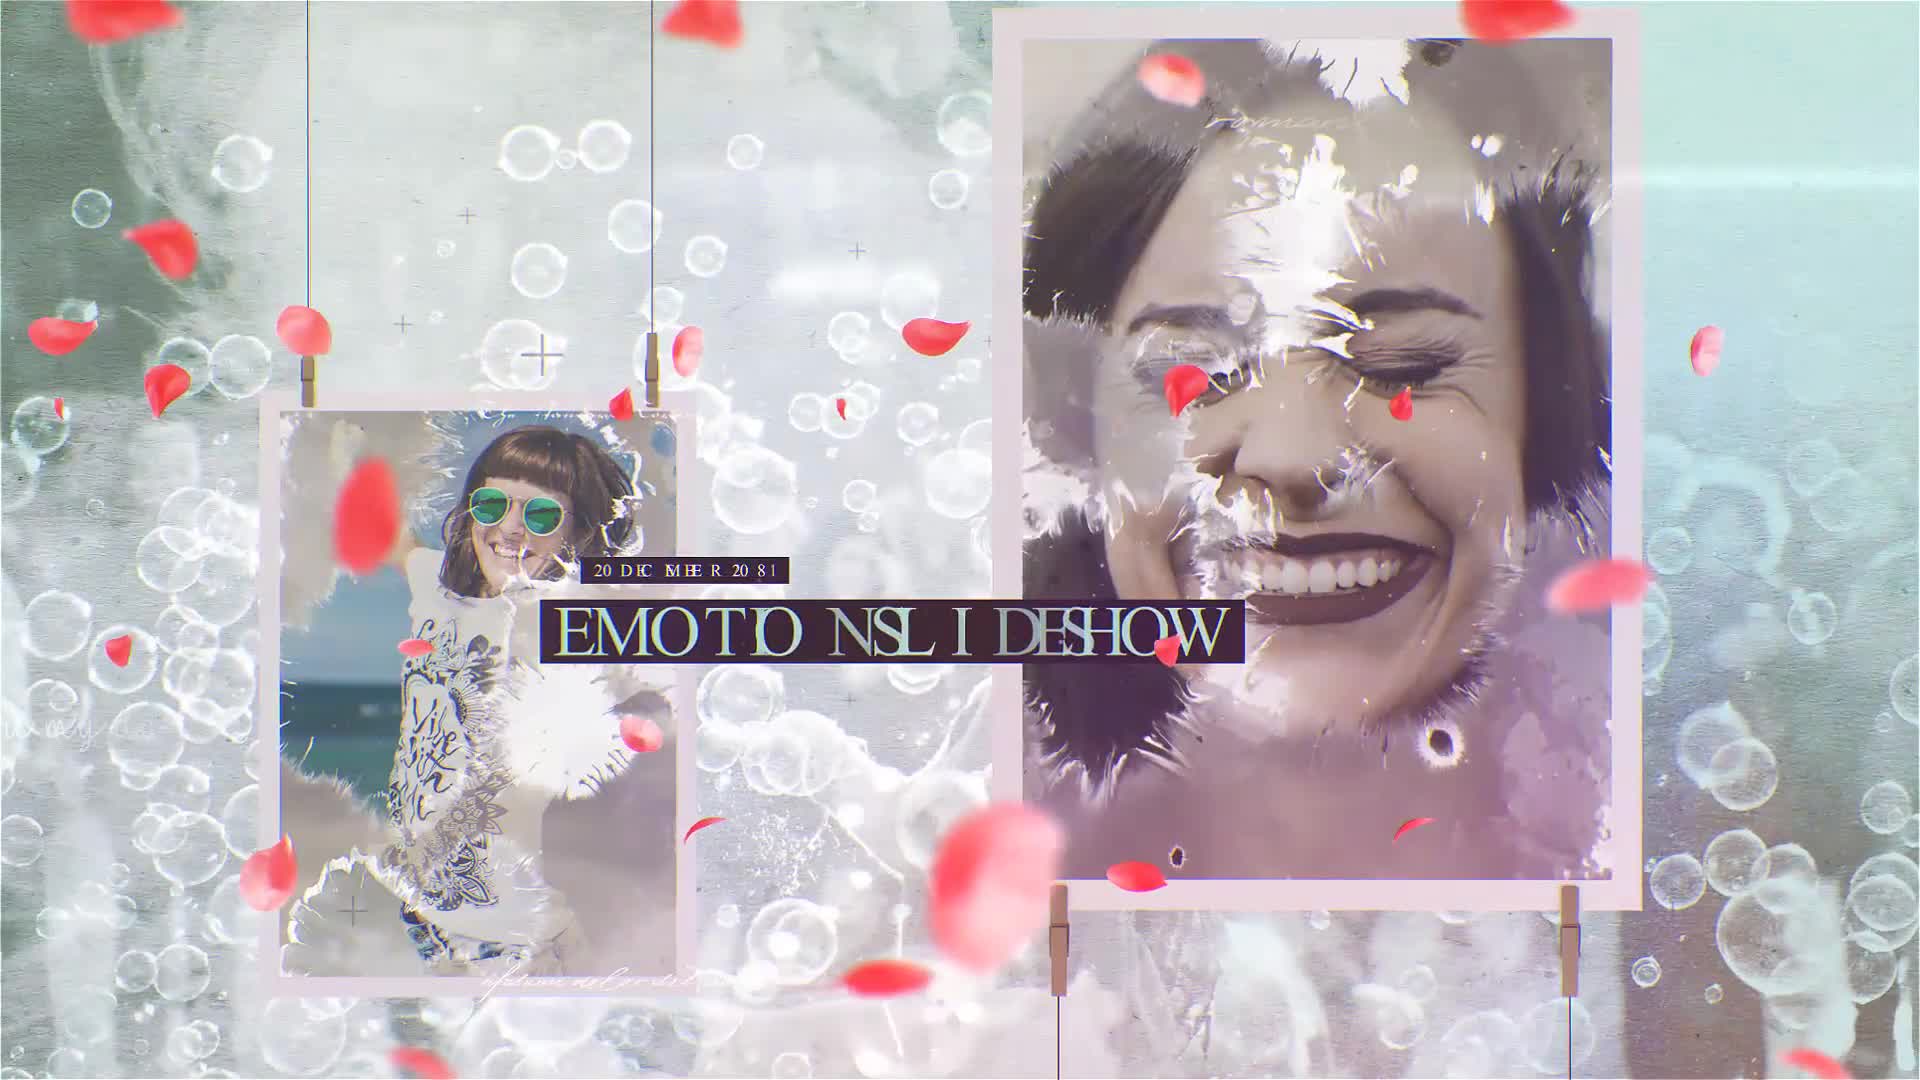 Petals Emotional Slideshow Videohive 33297576 Premiere Pro Image 1